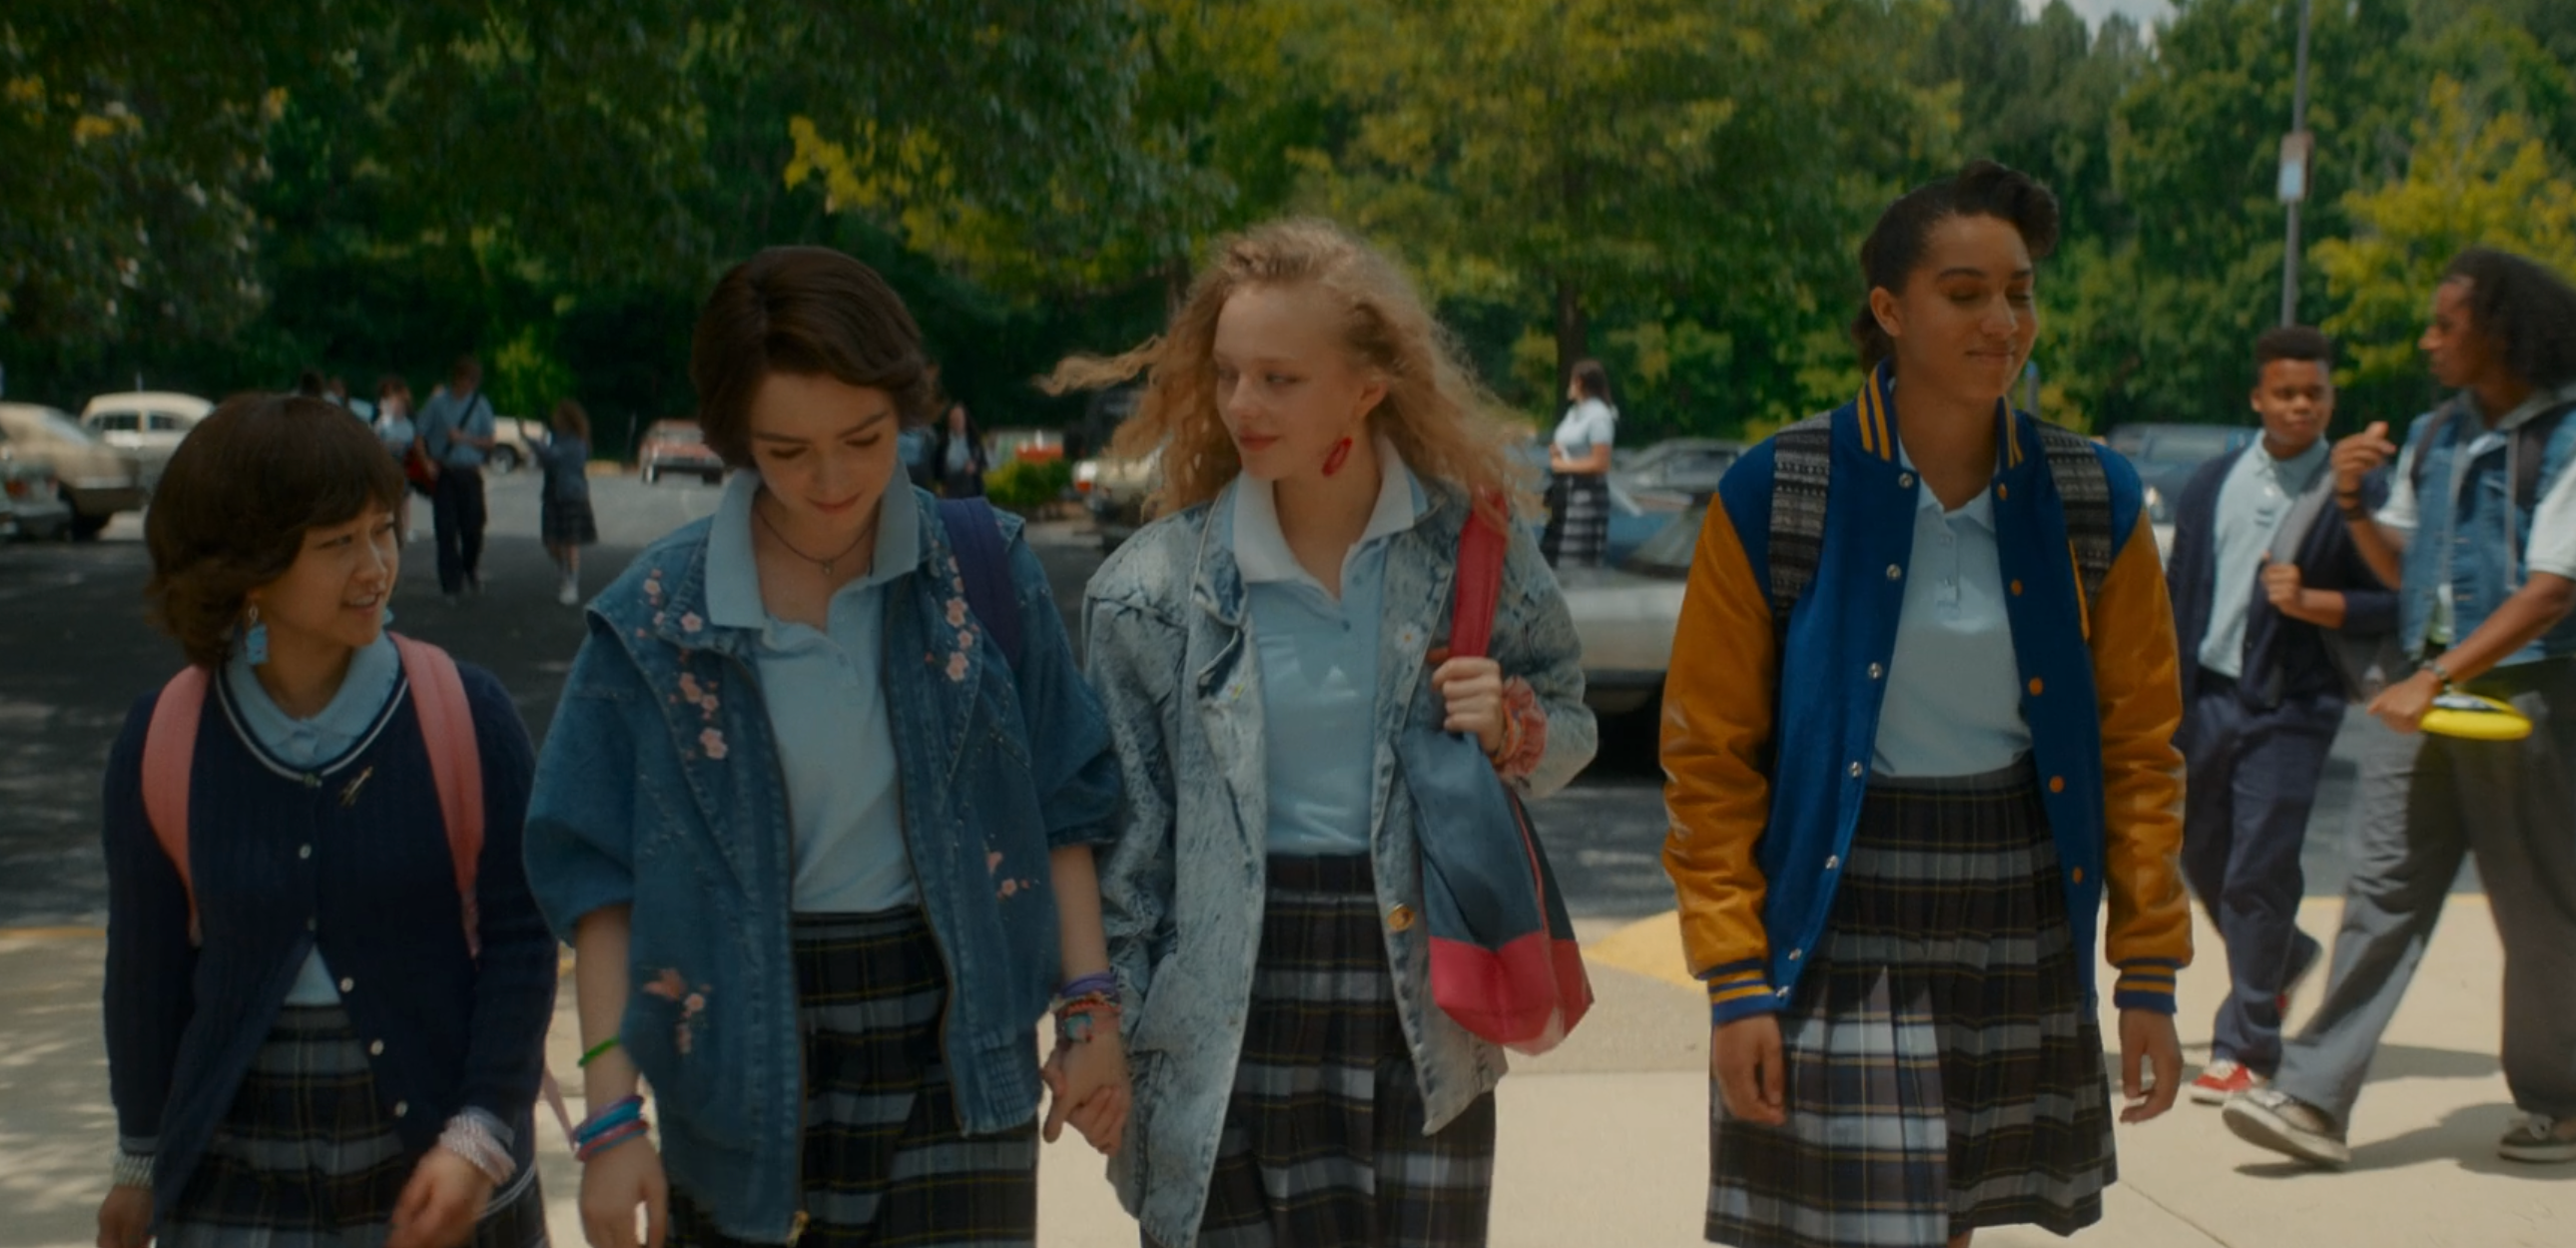 A friend group of girls enter school.